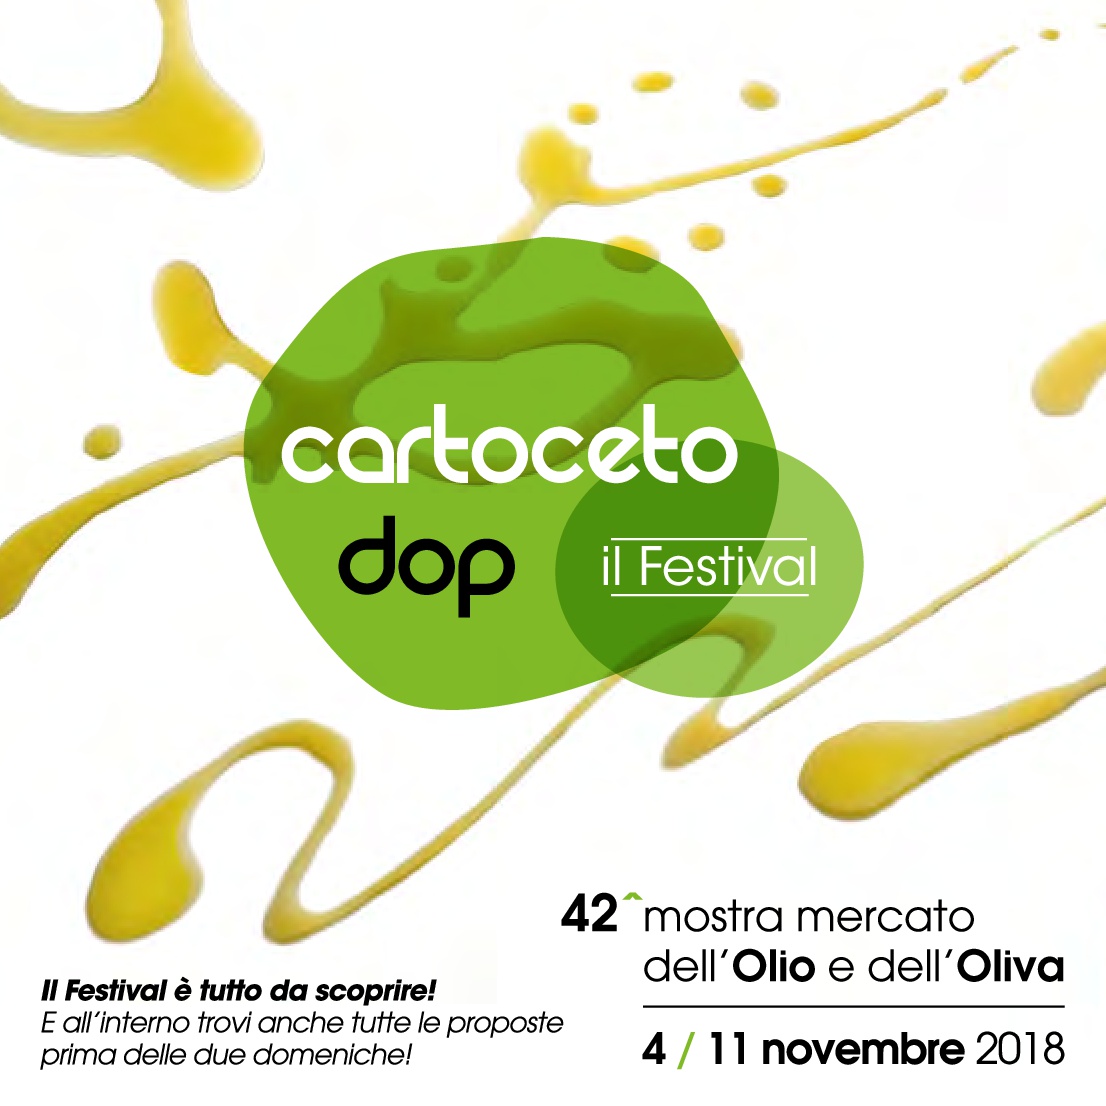 Cartoceto-DOP-il-festival-Brochure2018-001